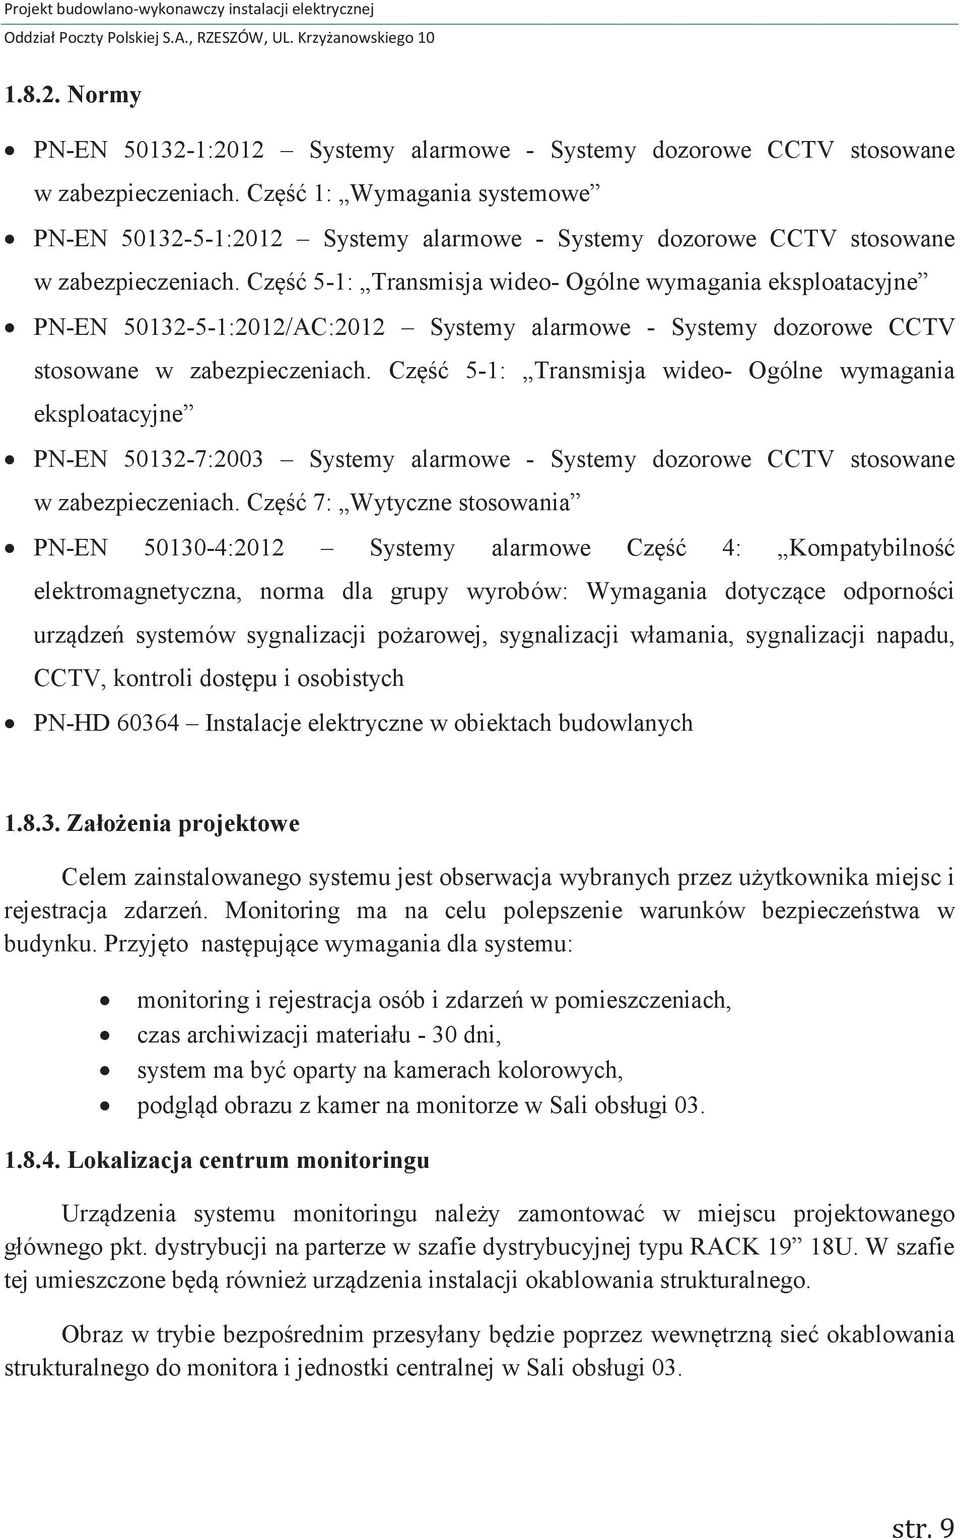 Część 1: Wymagania systemowe PN-EN 50132-5-1:2012 Systemy alarmowe - Systemy dozorowe CCTV stosowane w zabezpieczeniach.